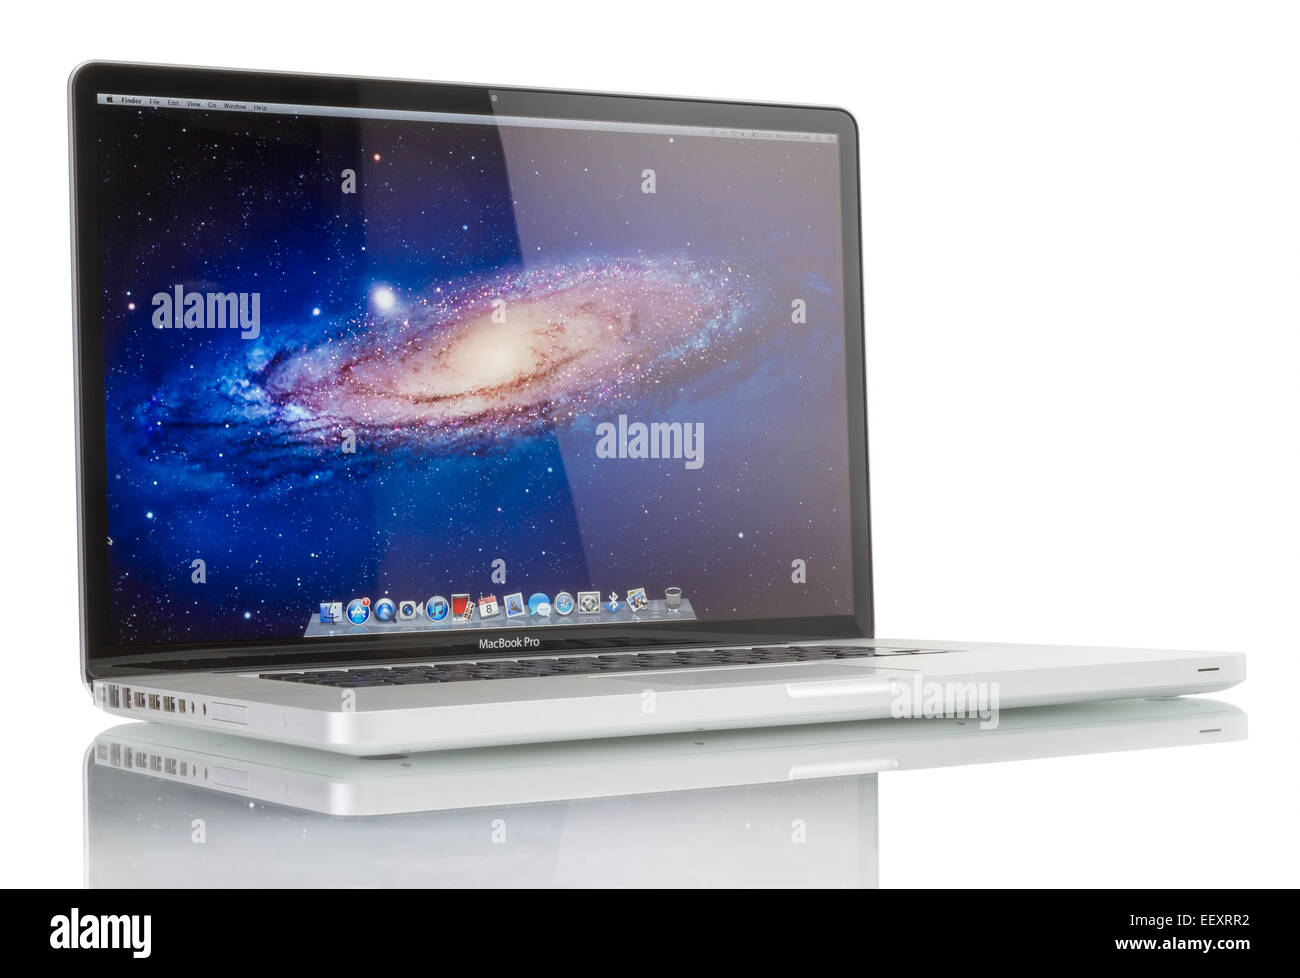 Portrait d'un tout nouvel ordinateur portable MacBook Pro Apple par Apple Inc. sur fond blanc Banque D'Images